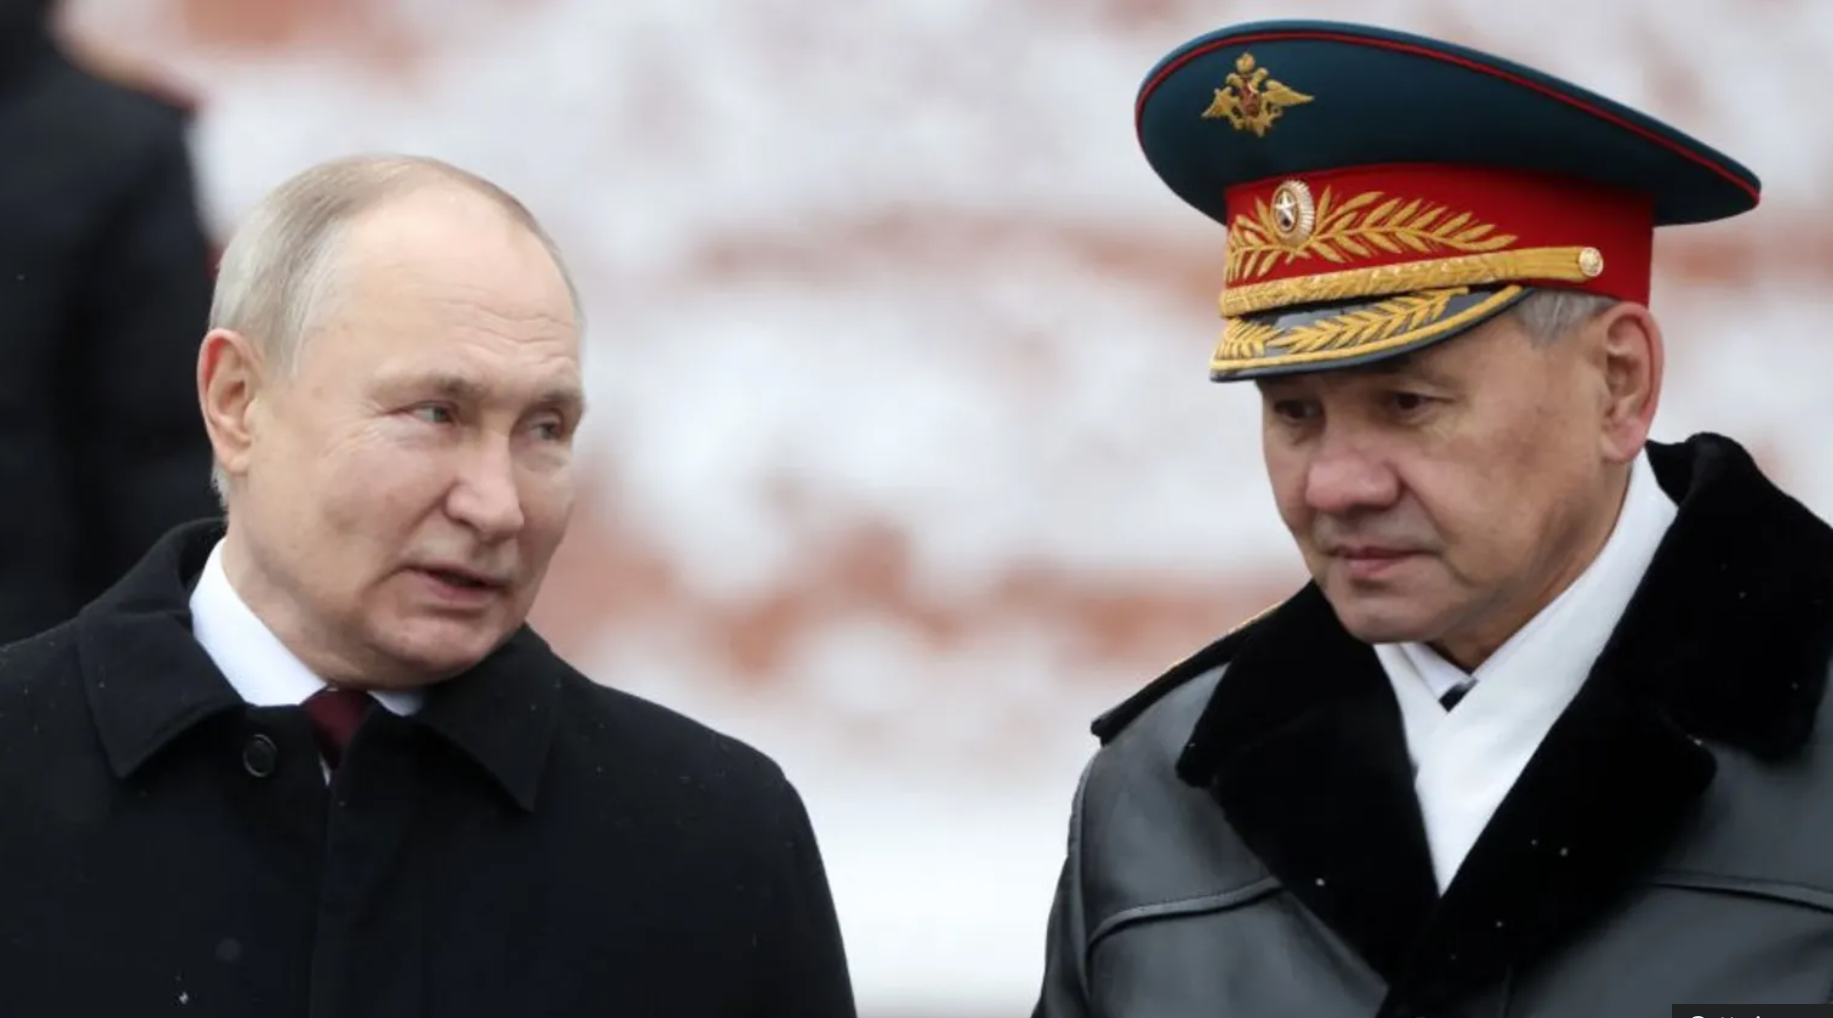 ISW cảnh báo động thái của ông Putin kéo dài chiến sự Ukraine và xấu hơn nữa- Ảnh 1.